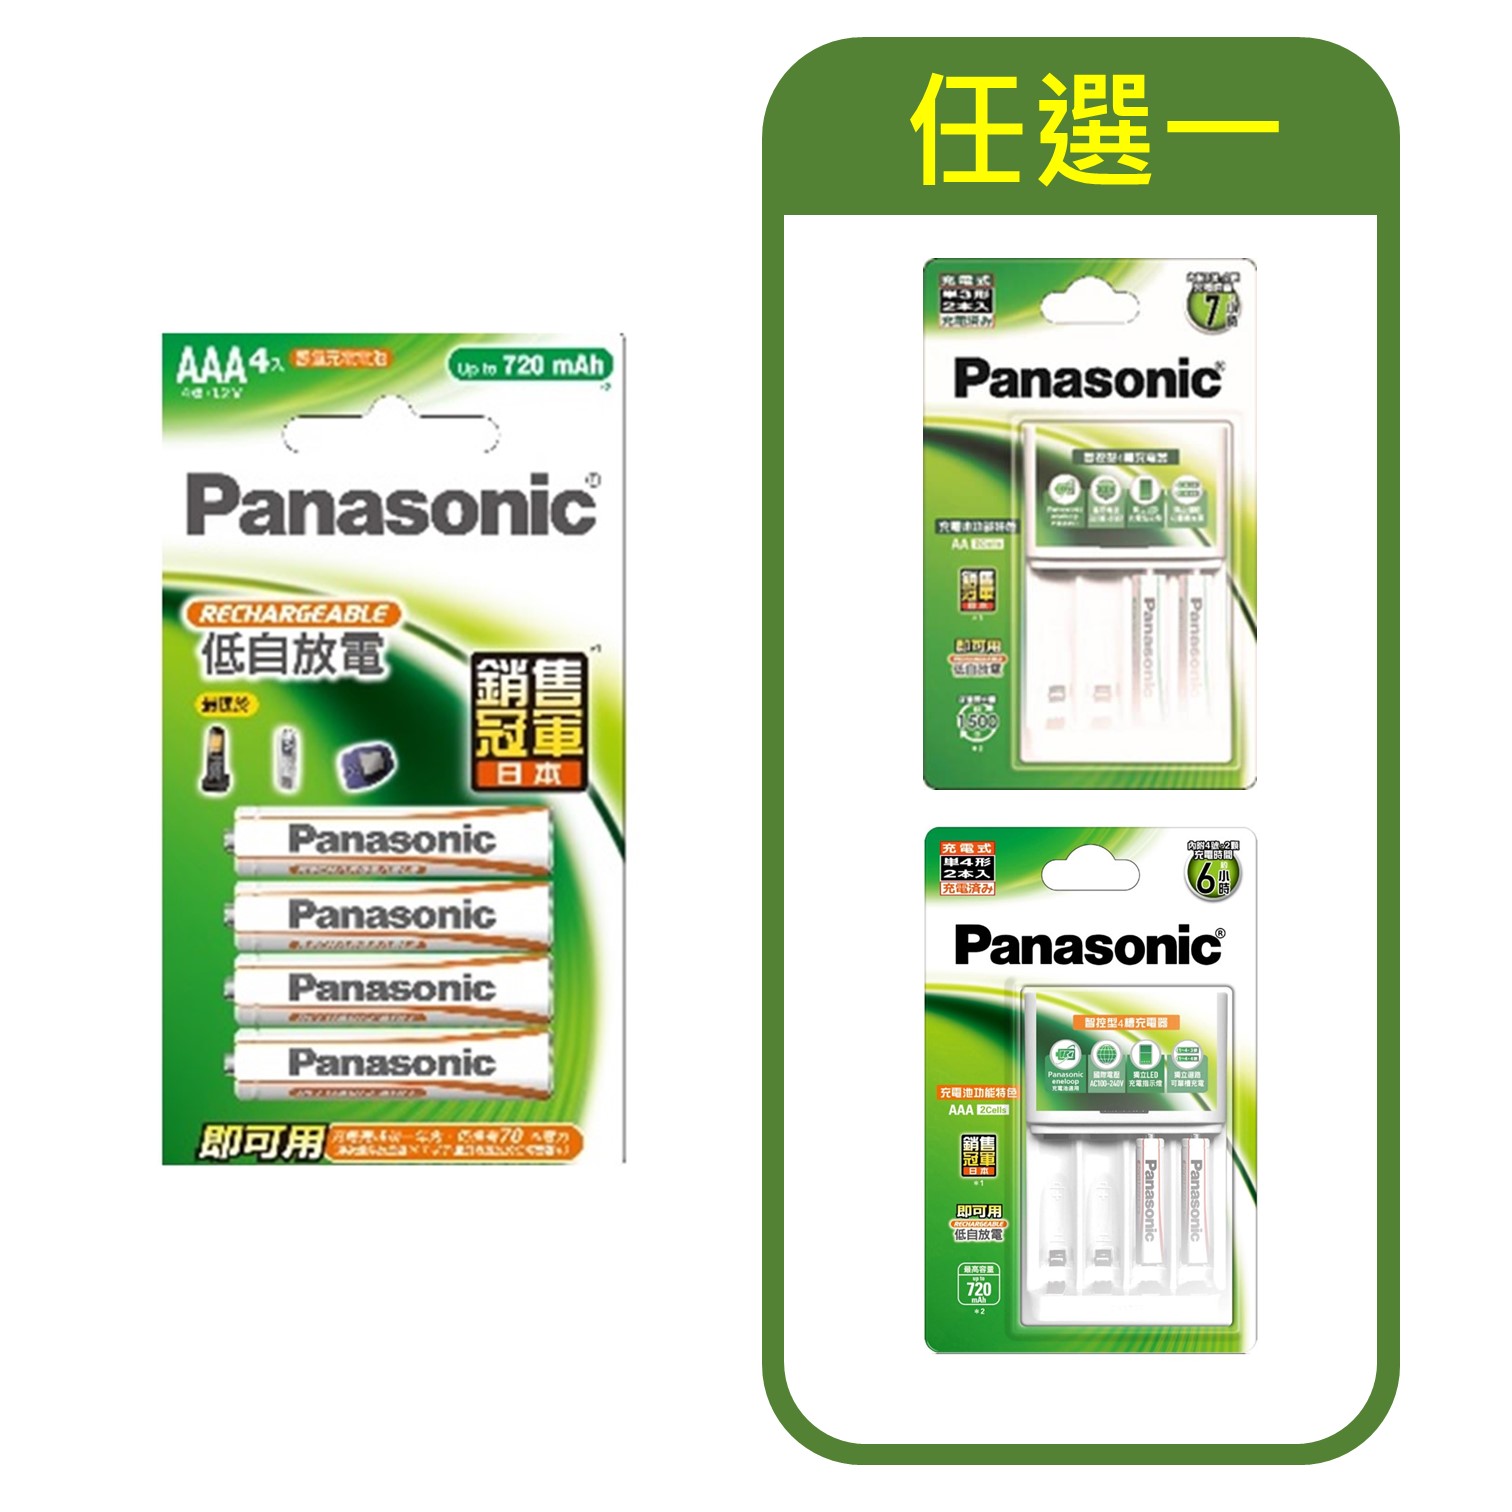 特惠組合 | 國際牌Panasonic 經濟型充電電池4號4入 + 智控型充電器+充電電池3號&#47;4號2入(任選一)